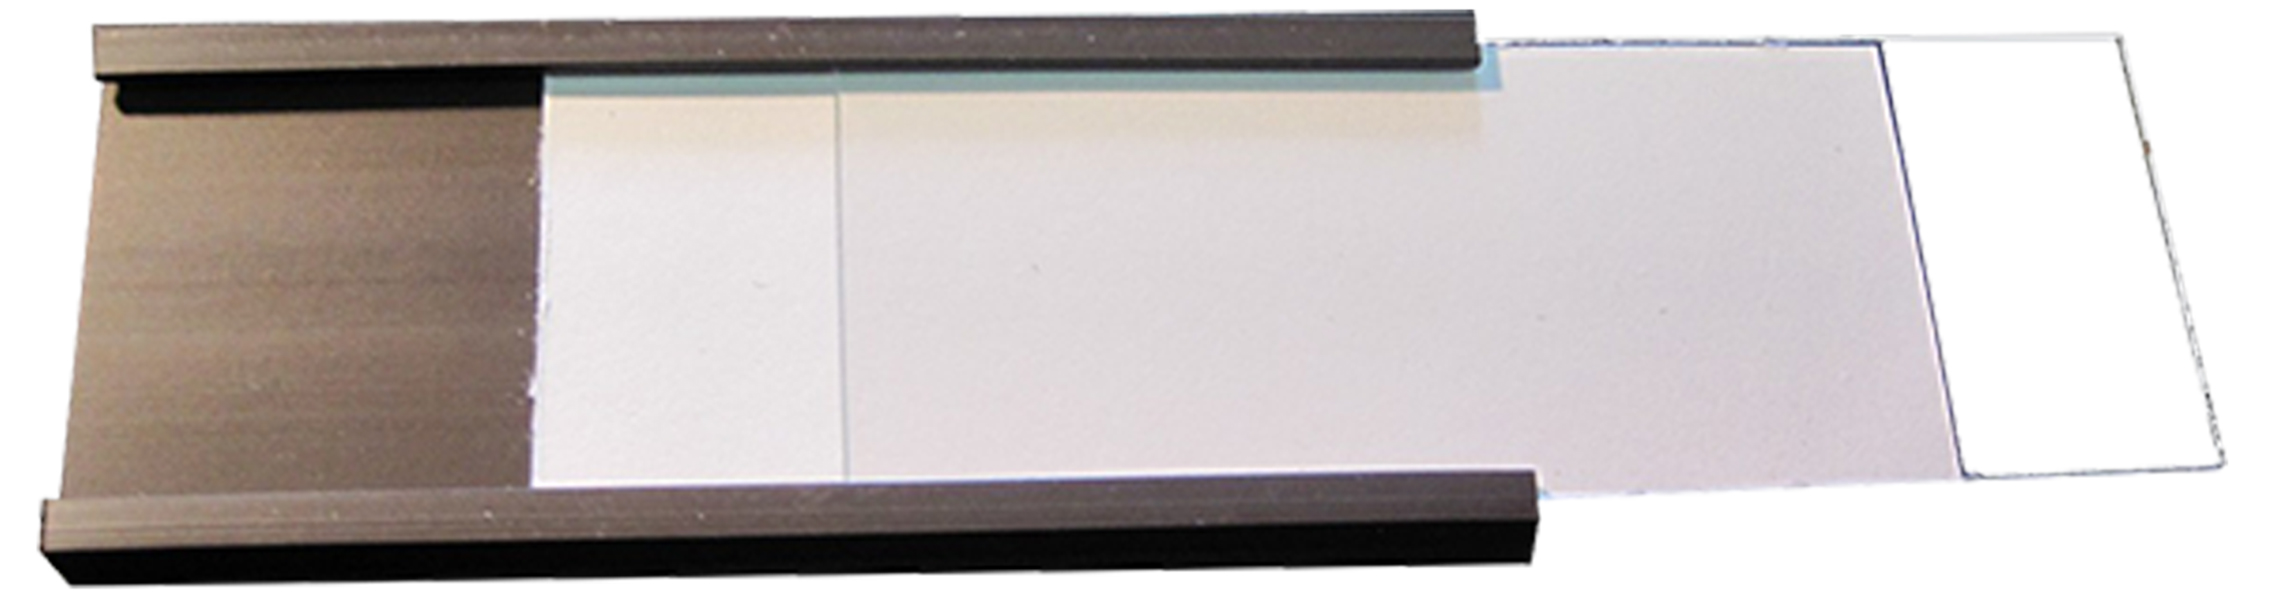 Porta etichetta magnetico Profilio A “C”, Profili a C, Etichette Magnetiche tipo C complete di cartoncino e PVC, Porta Etichette Magnetiche a C in Rotolo, profilo a C 10mm-40mm